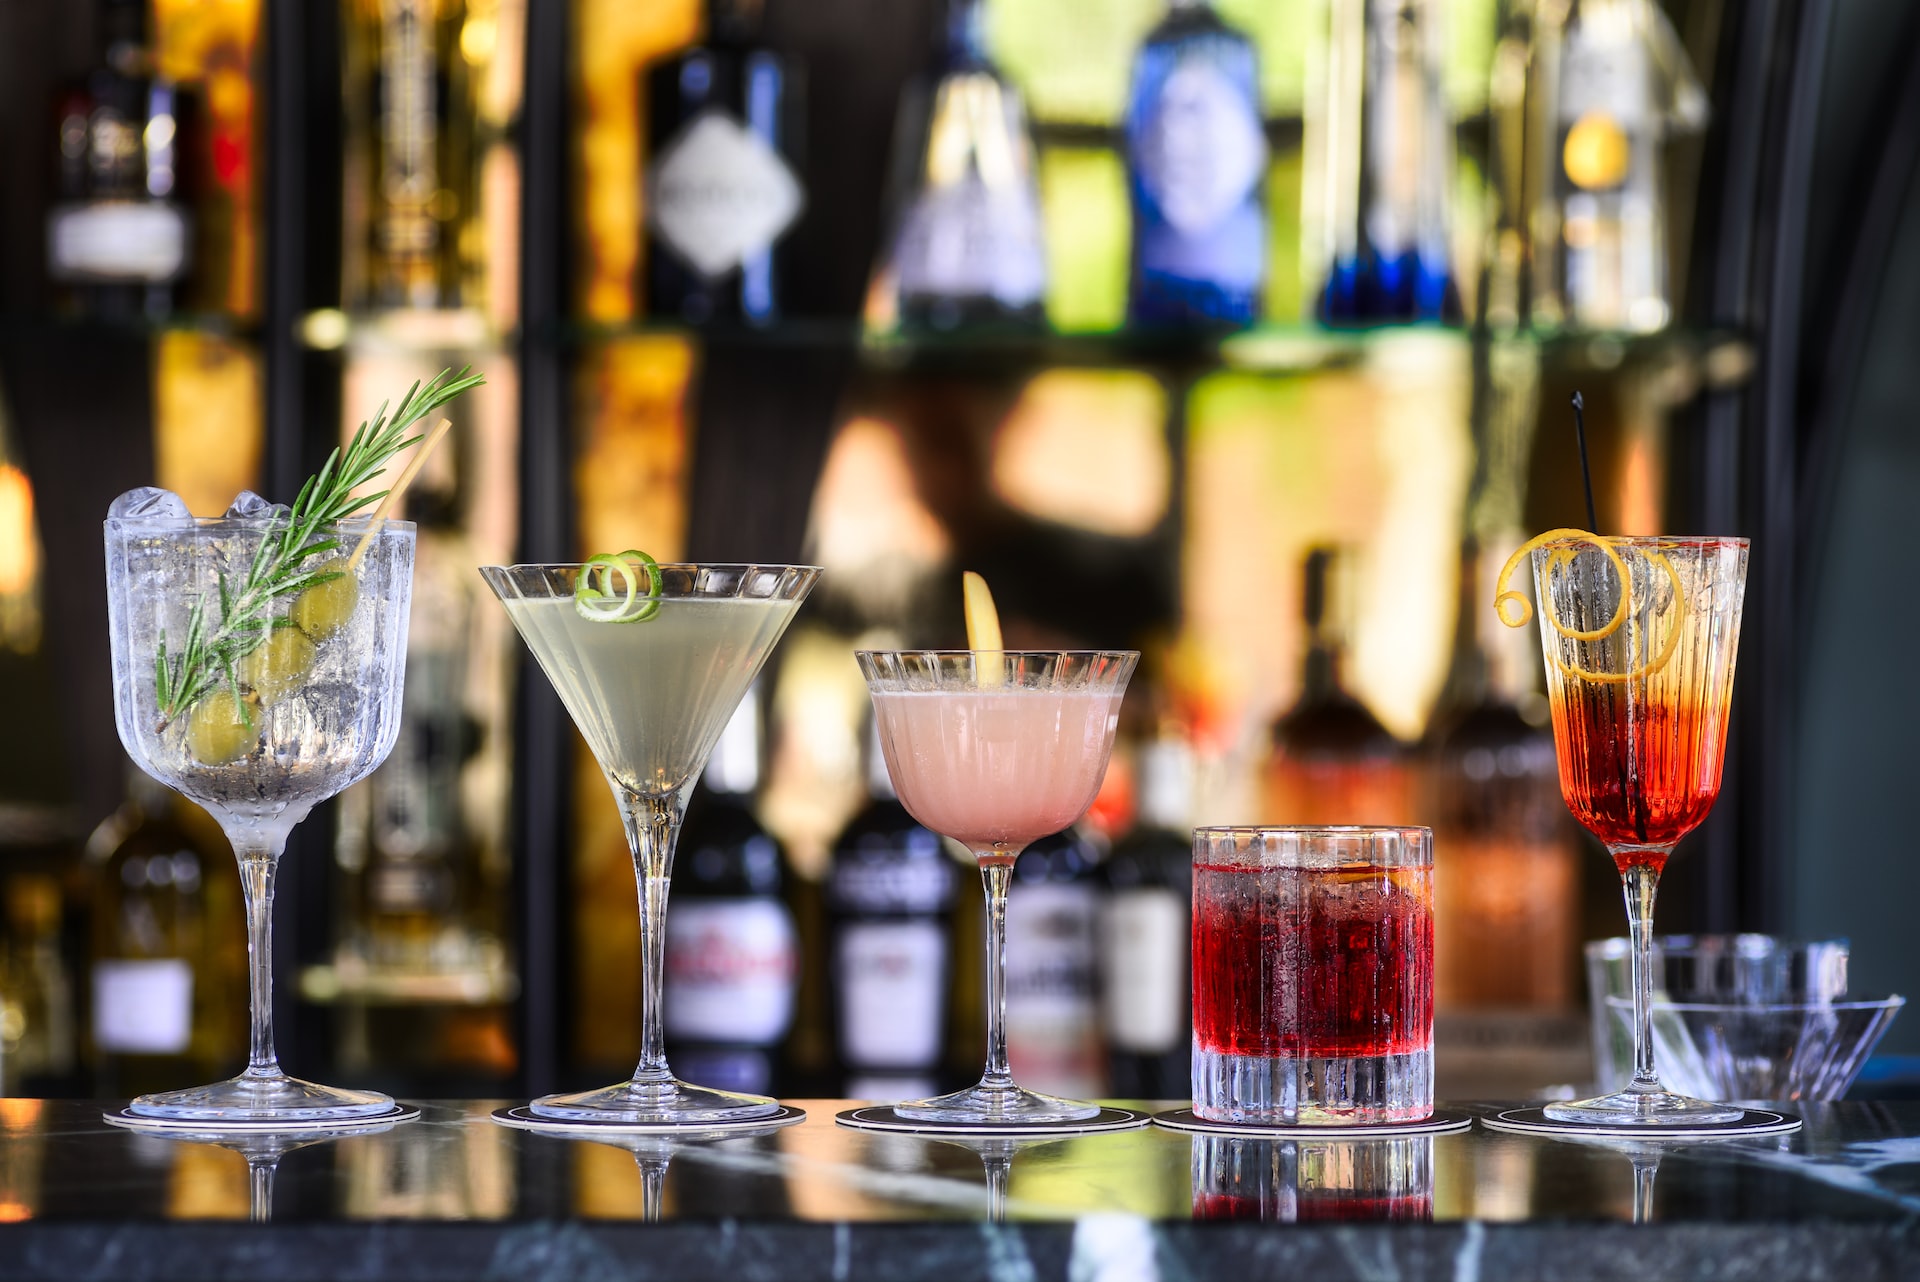 Line of cocktails on bar.